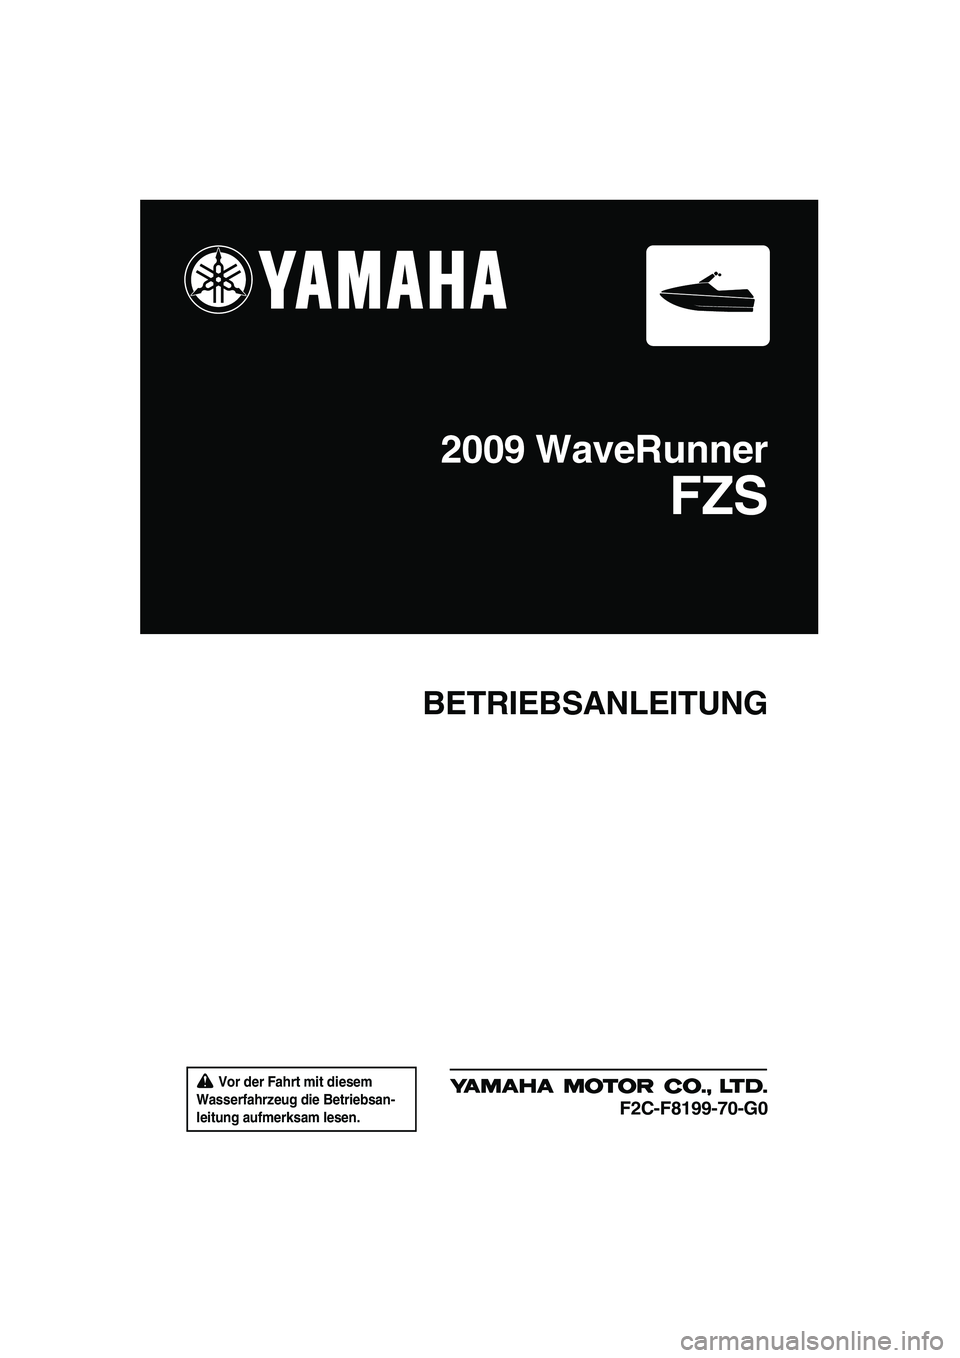 YAMAHA FZS 2009  Betriebsanleitungen (in German)  Vor der Fahrt mit diesem 
Wasserfahrzeug die Betriebsan-
leitung aufmerksam lesen.
BETRIEBSANLEITUNG
2009 WaveRunner
FZS
F2C-F8199-70-G0
UF2C70G0.book  Page 1  Tuesday, November 4, 2008  4:13 PM 